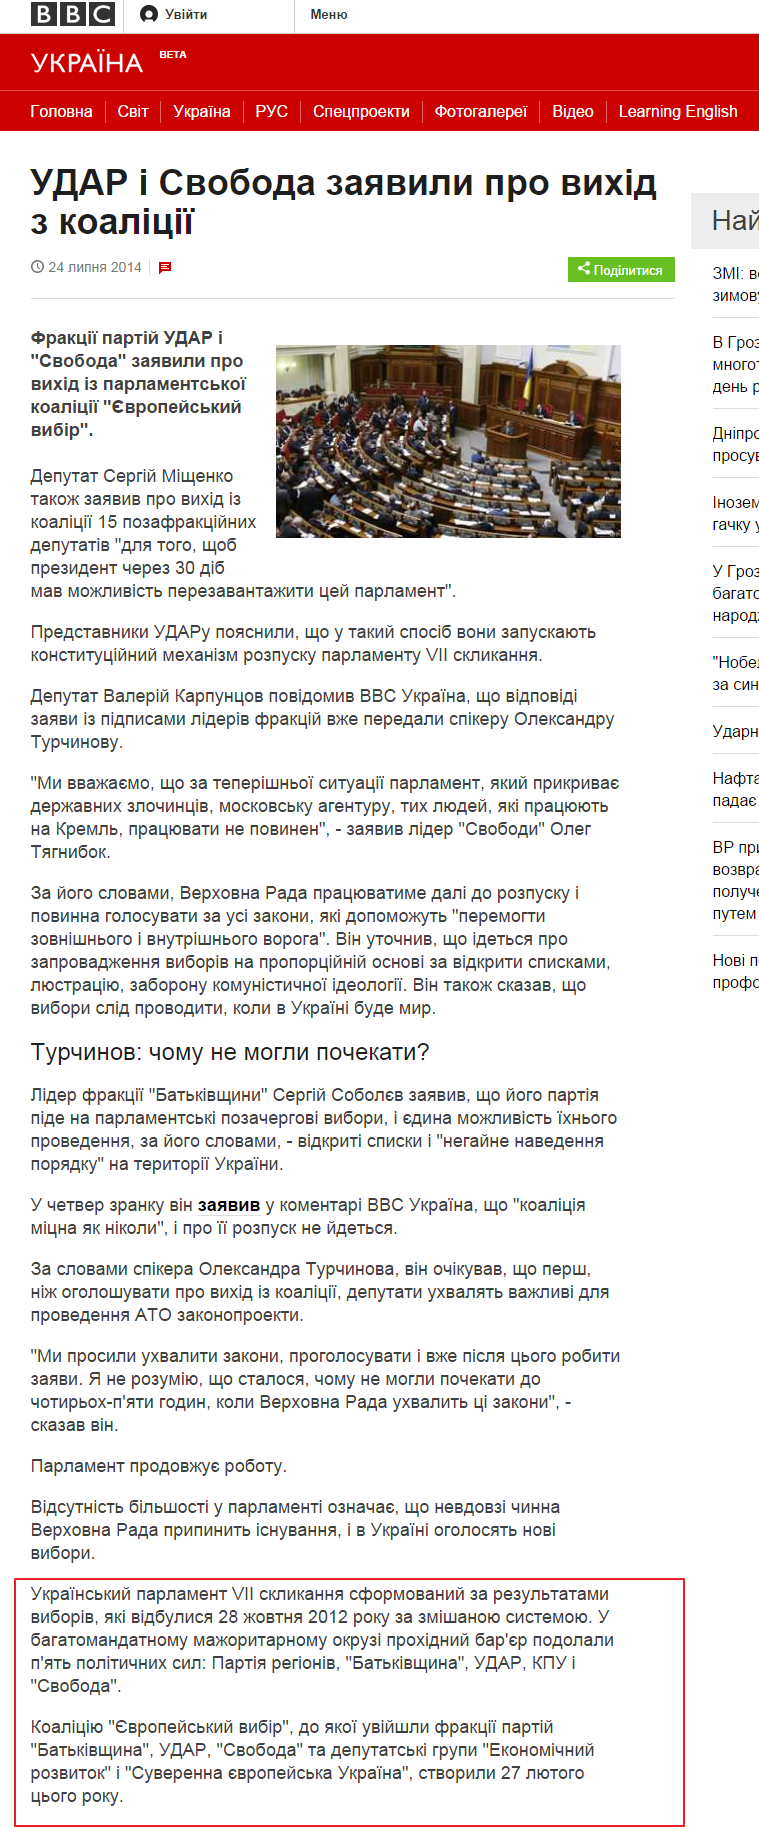 http://ukr.segodnya.ua/politics/pnews/sobolev-v-rade-soglashayutsya-prinyat-zakon-o-vyborah-po-otkrytym-spiskam-548581.html